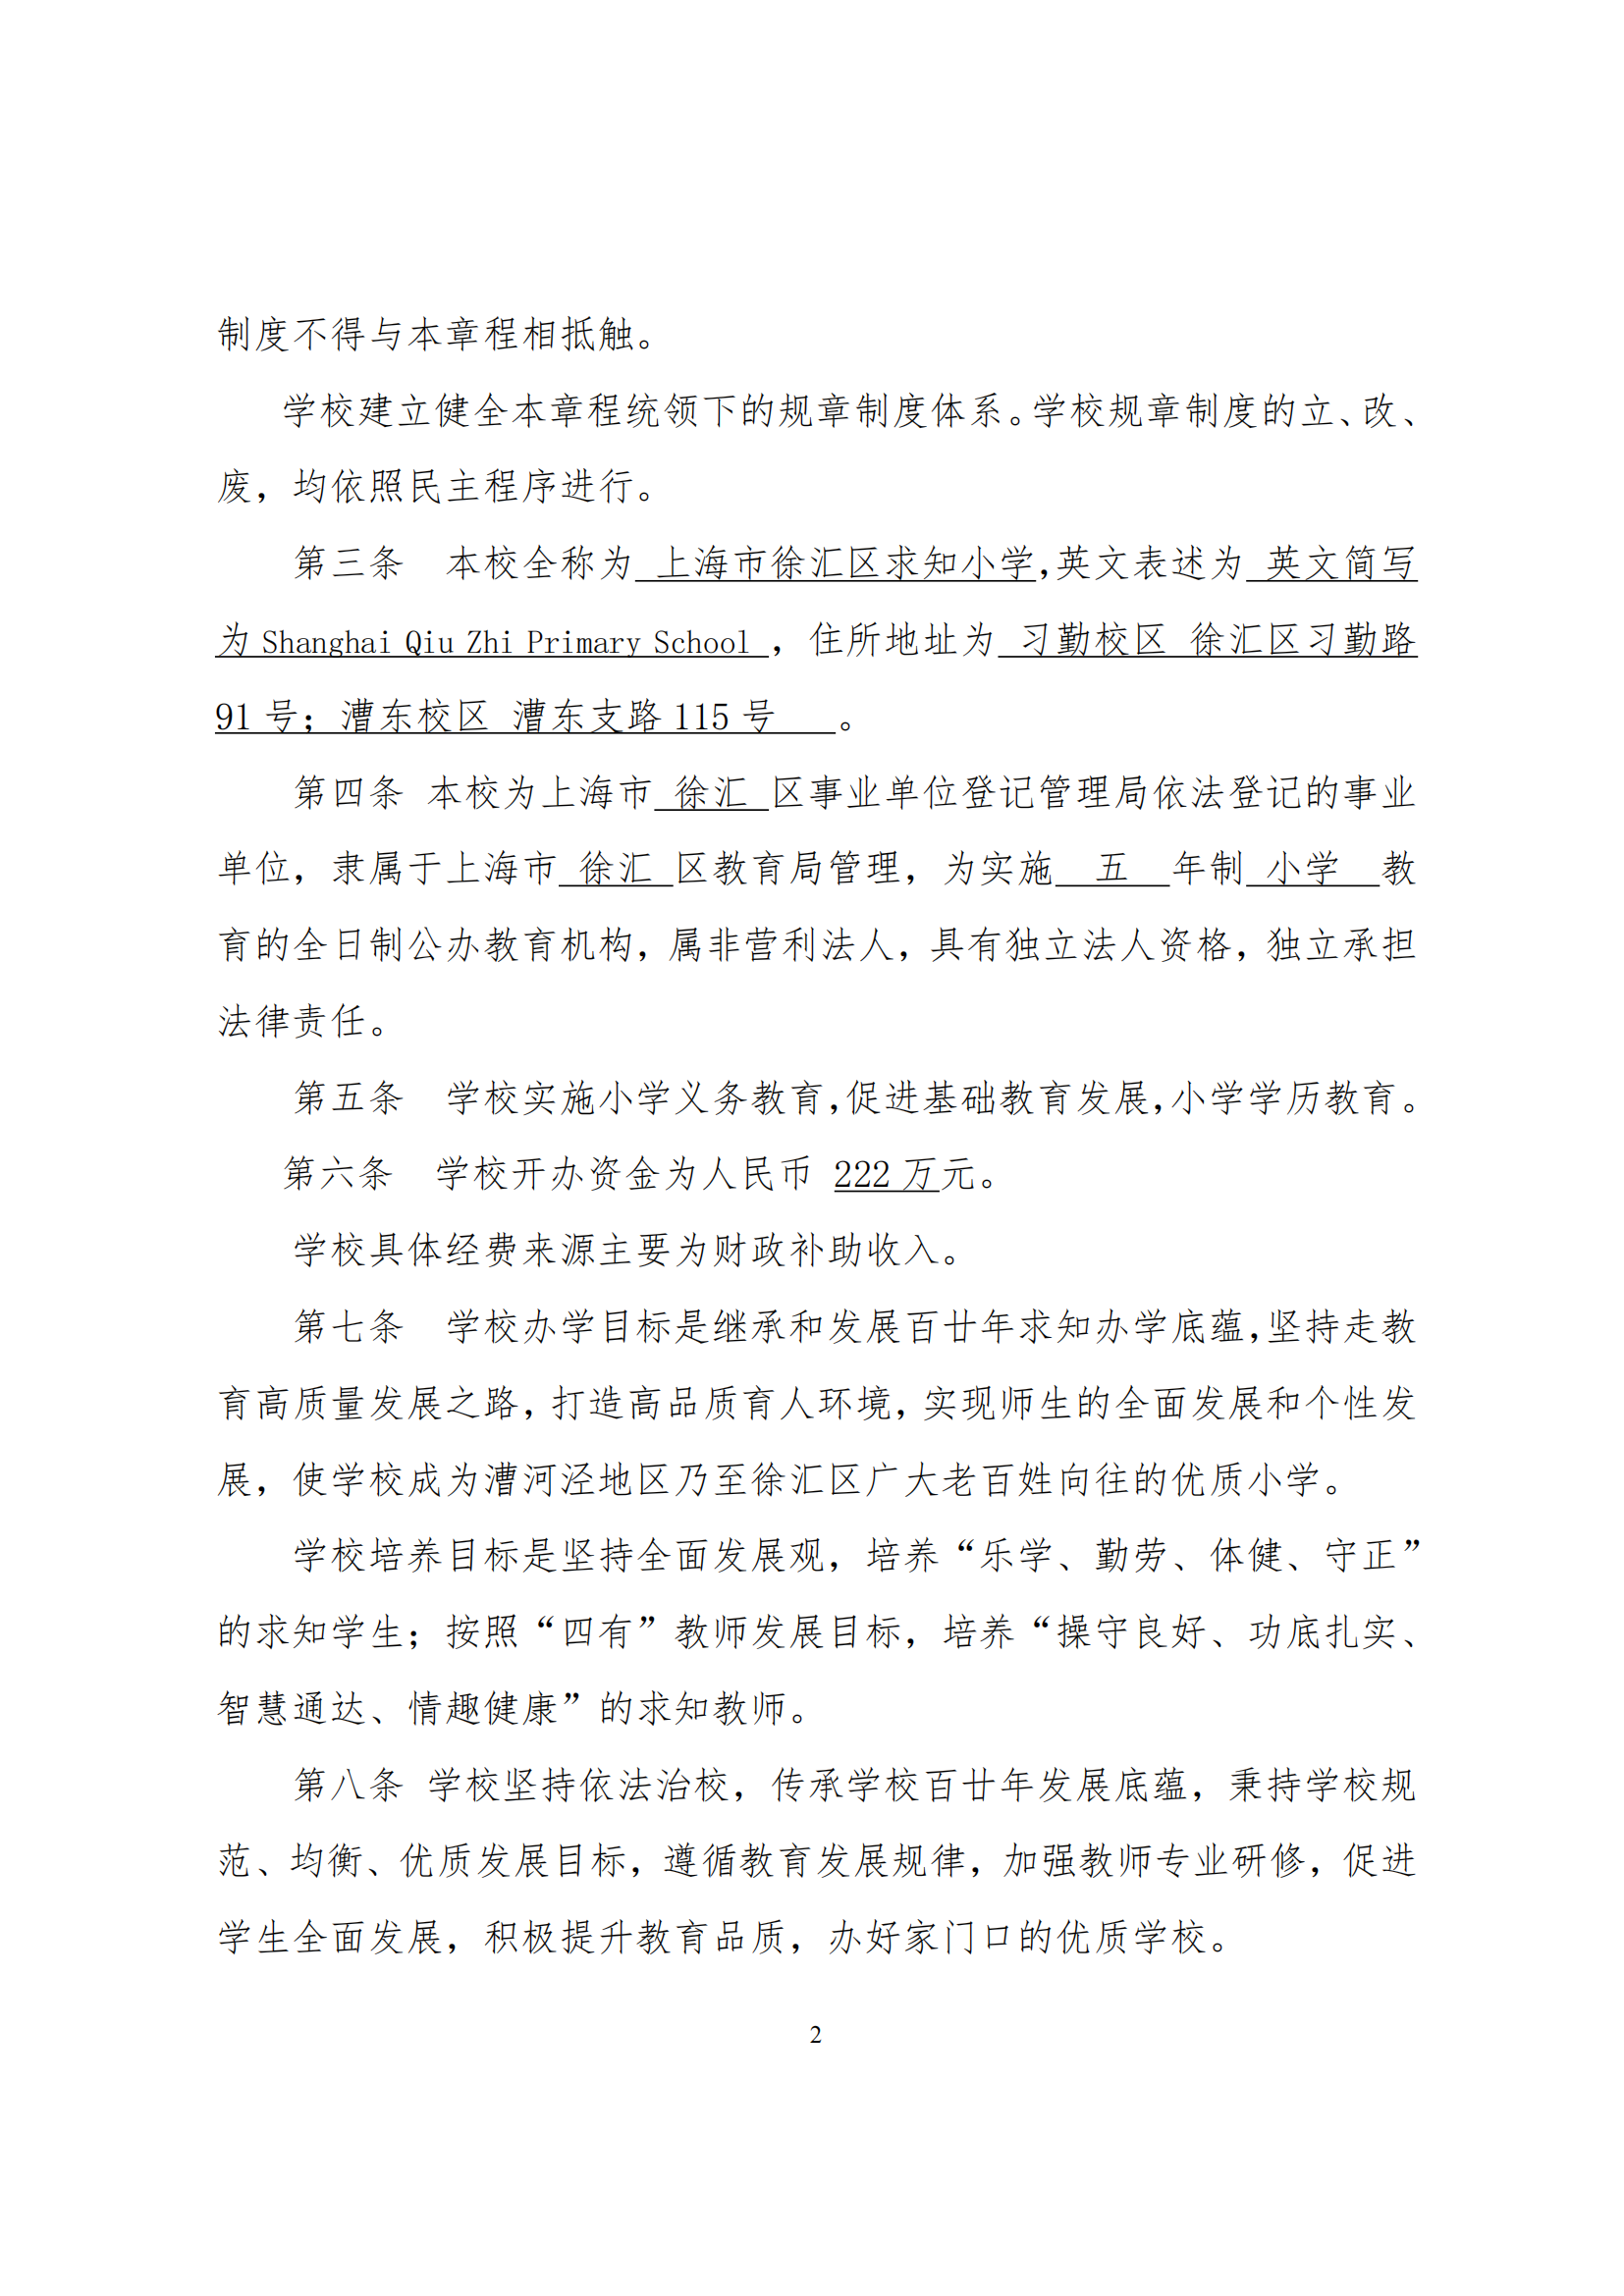 上海市徐汇区求知小学学校章程（提交稿）_01.png